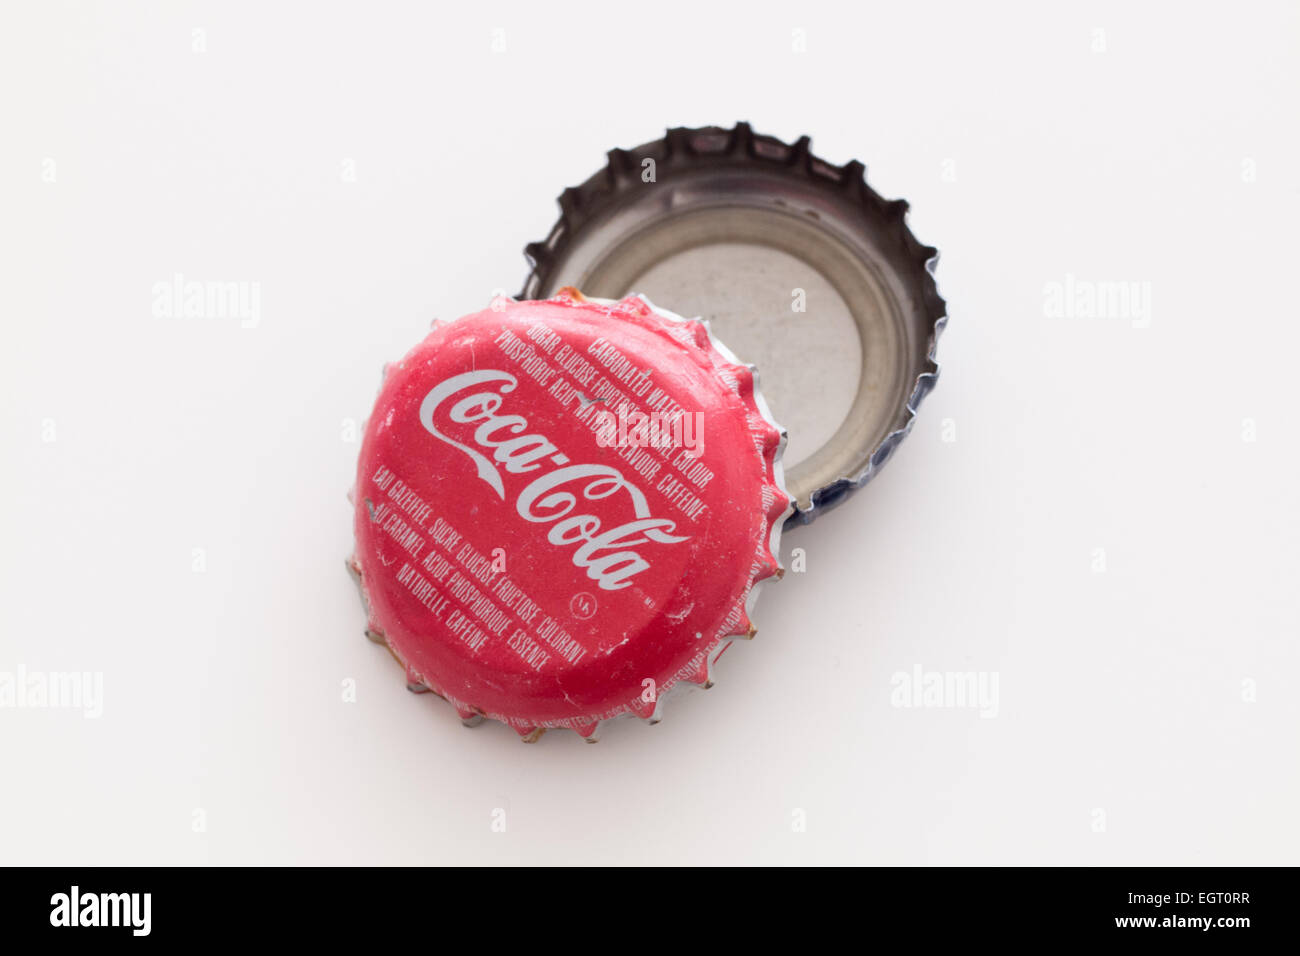 A Coca-Cola bottle cap (Coca-Cola bottle caps). Stock Photo